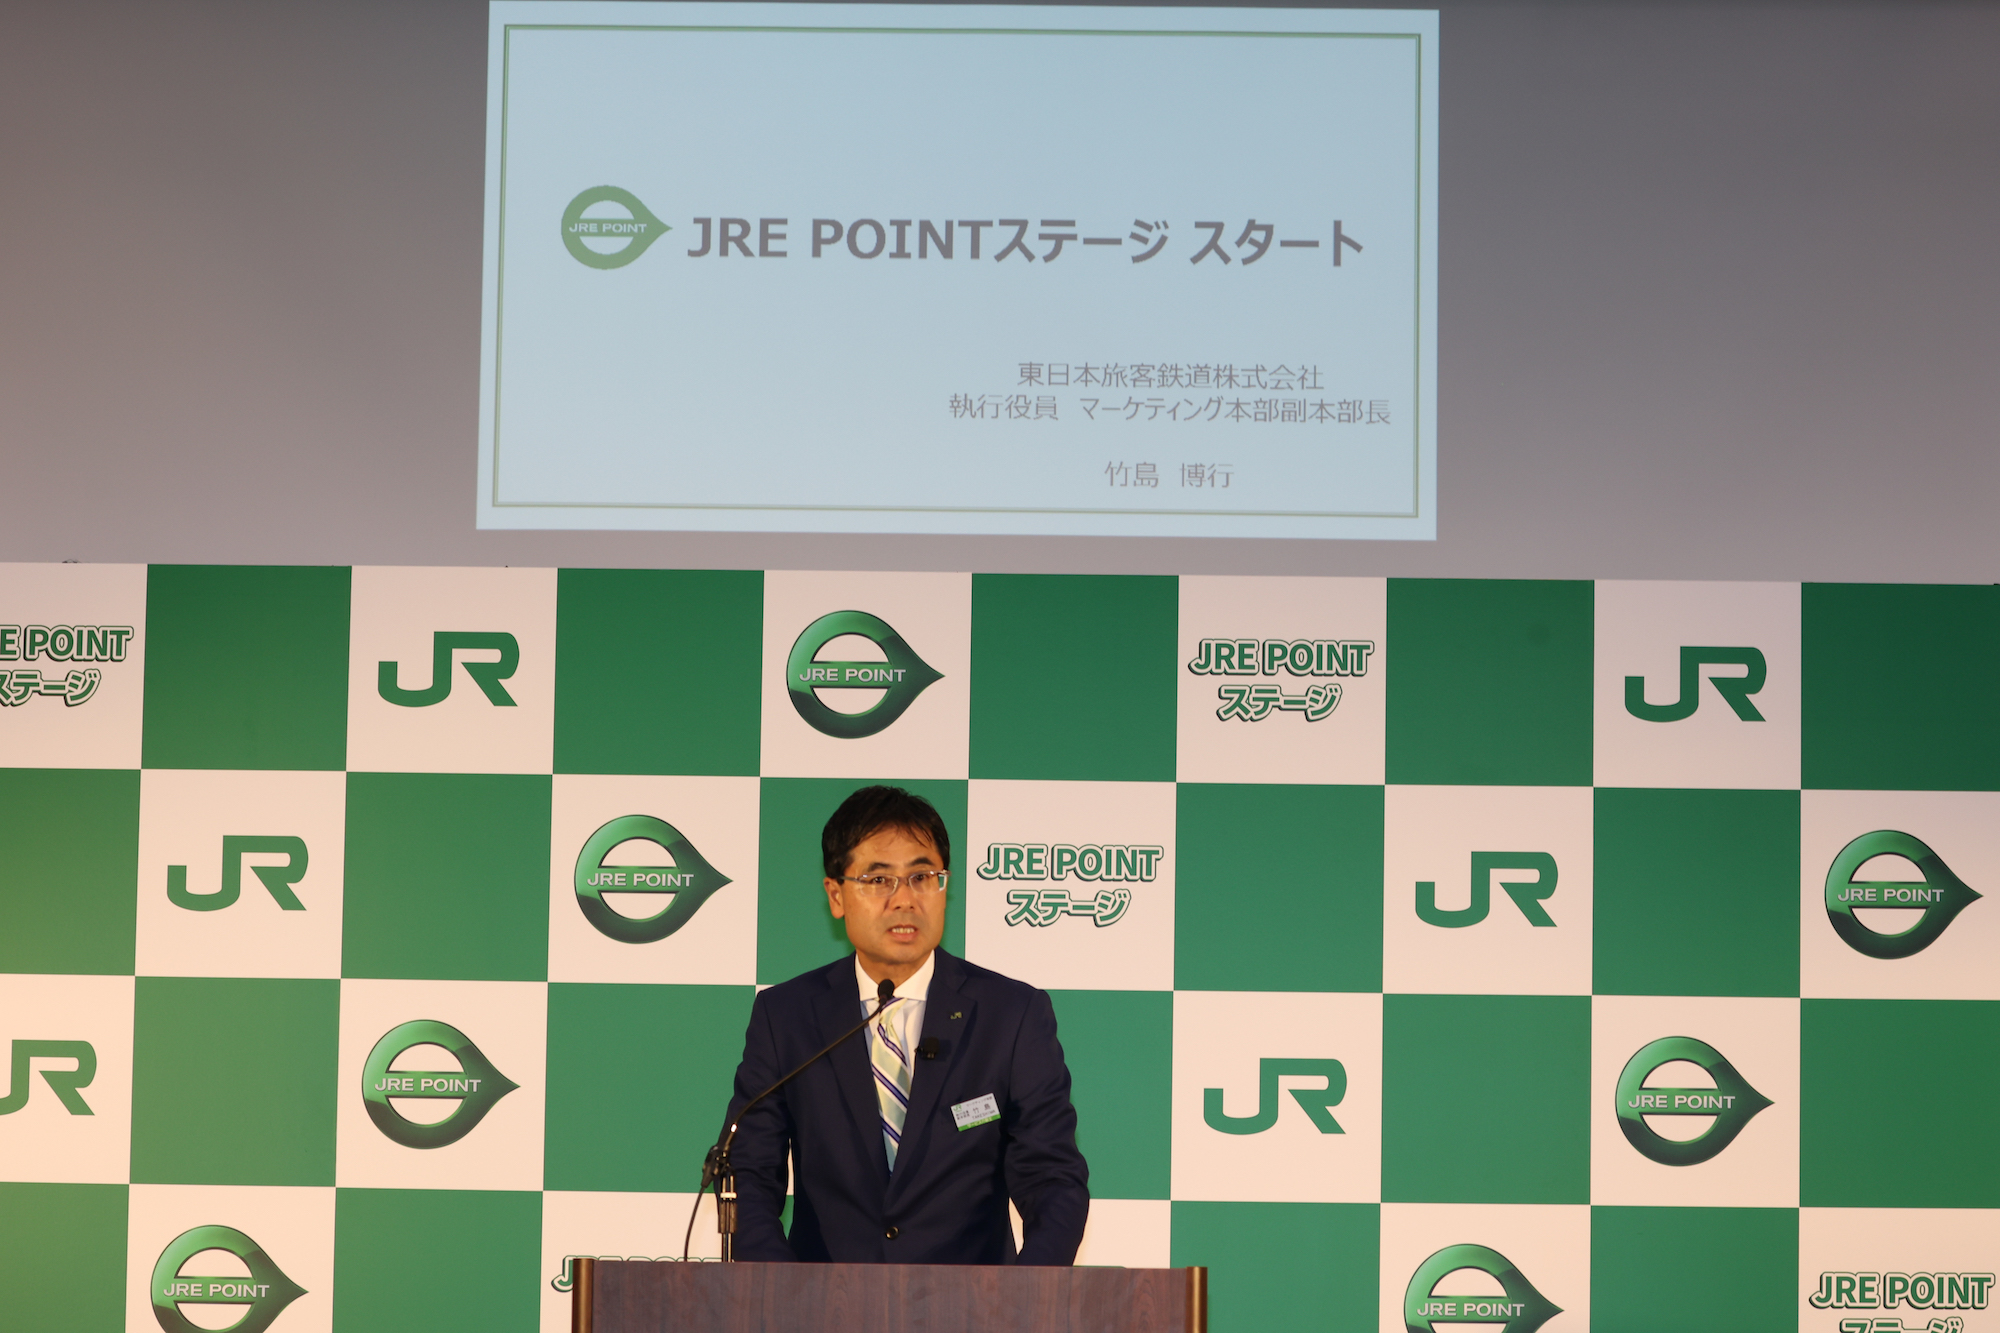 東日本旅客鉄道株式会社 執行役員 マーケティング本部服本部長 竹島博行氏が「JRE POINTステージ」の概要をご説明。